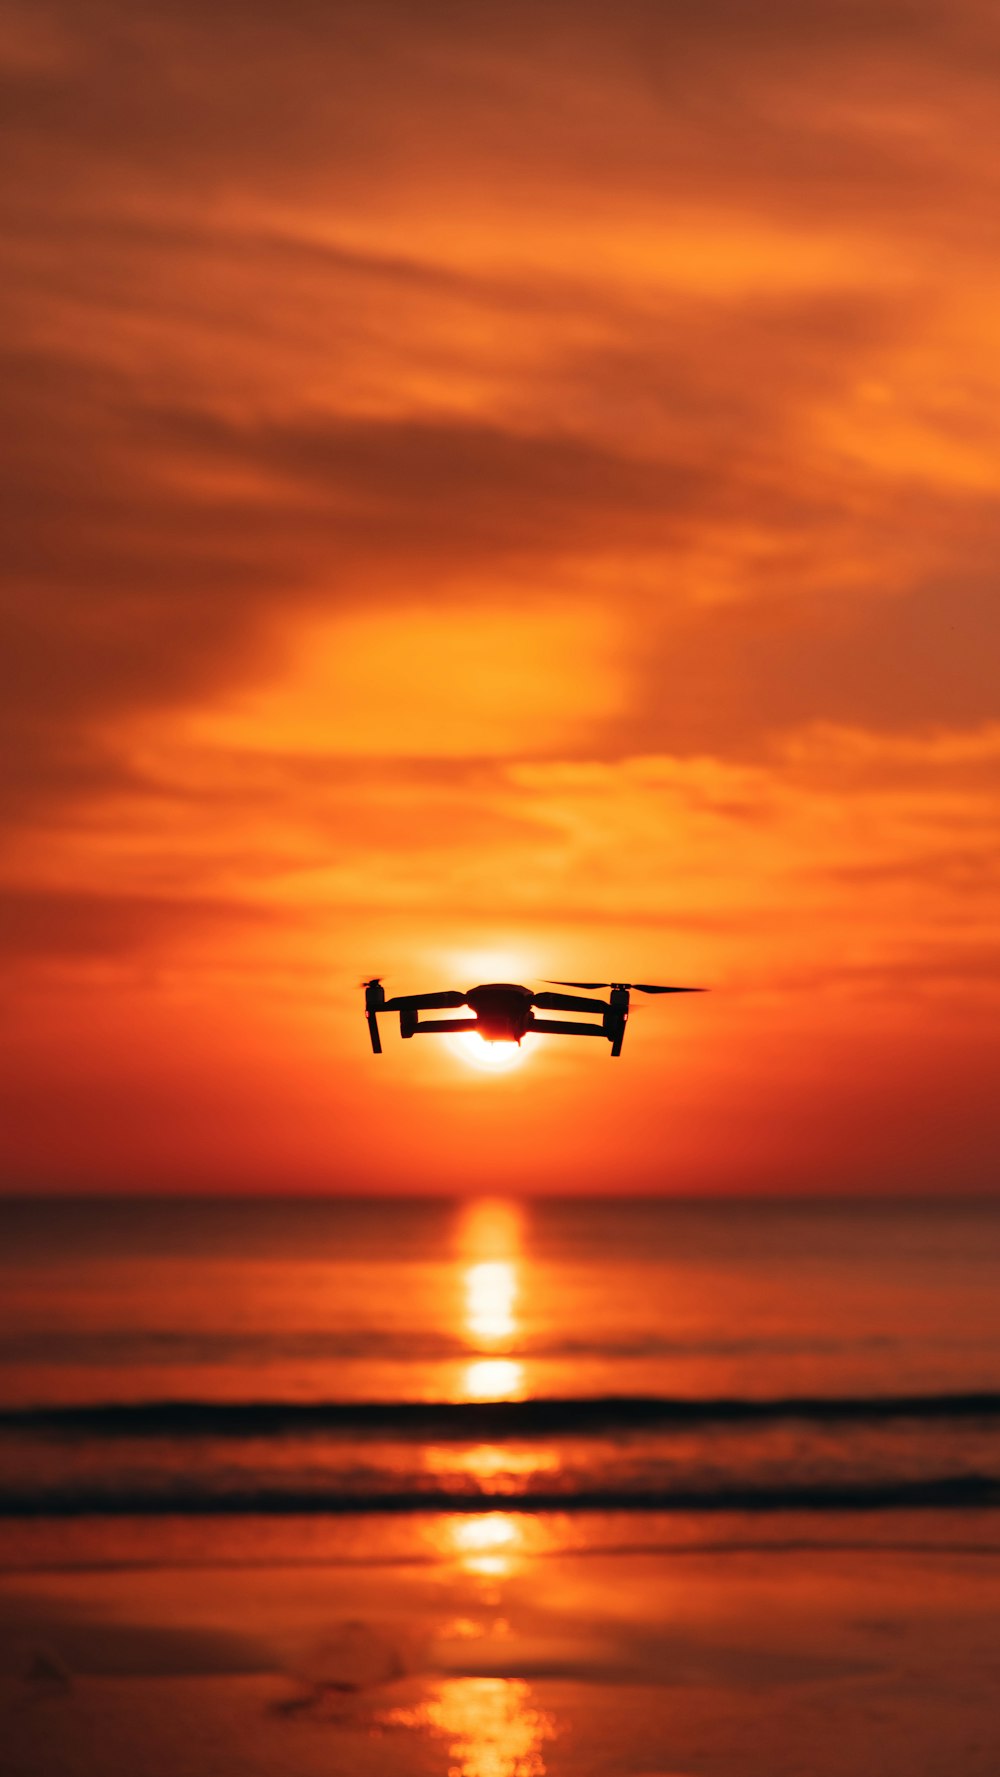 Un avion survolant l’océan au coucher du soleil